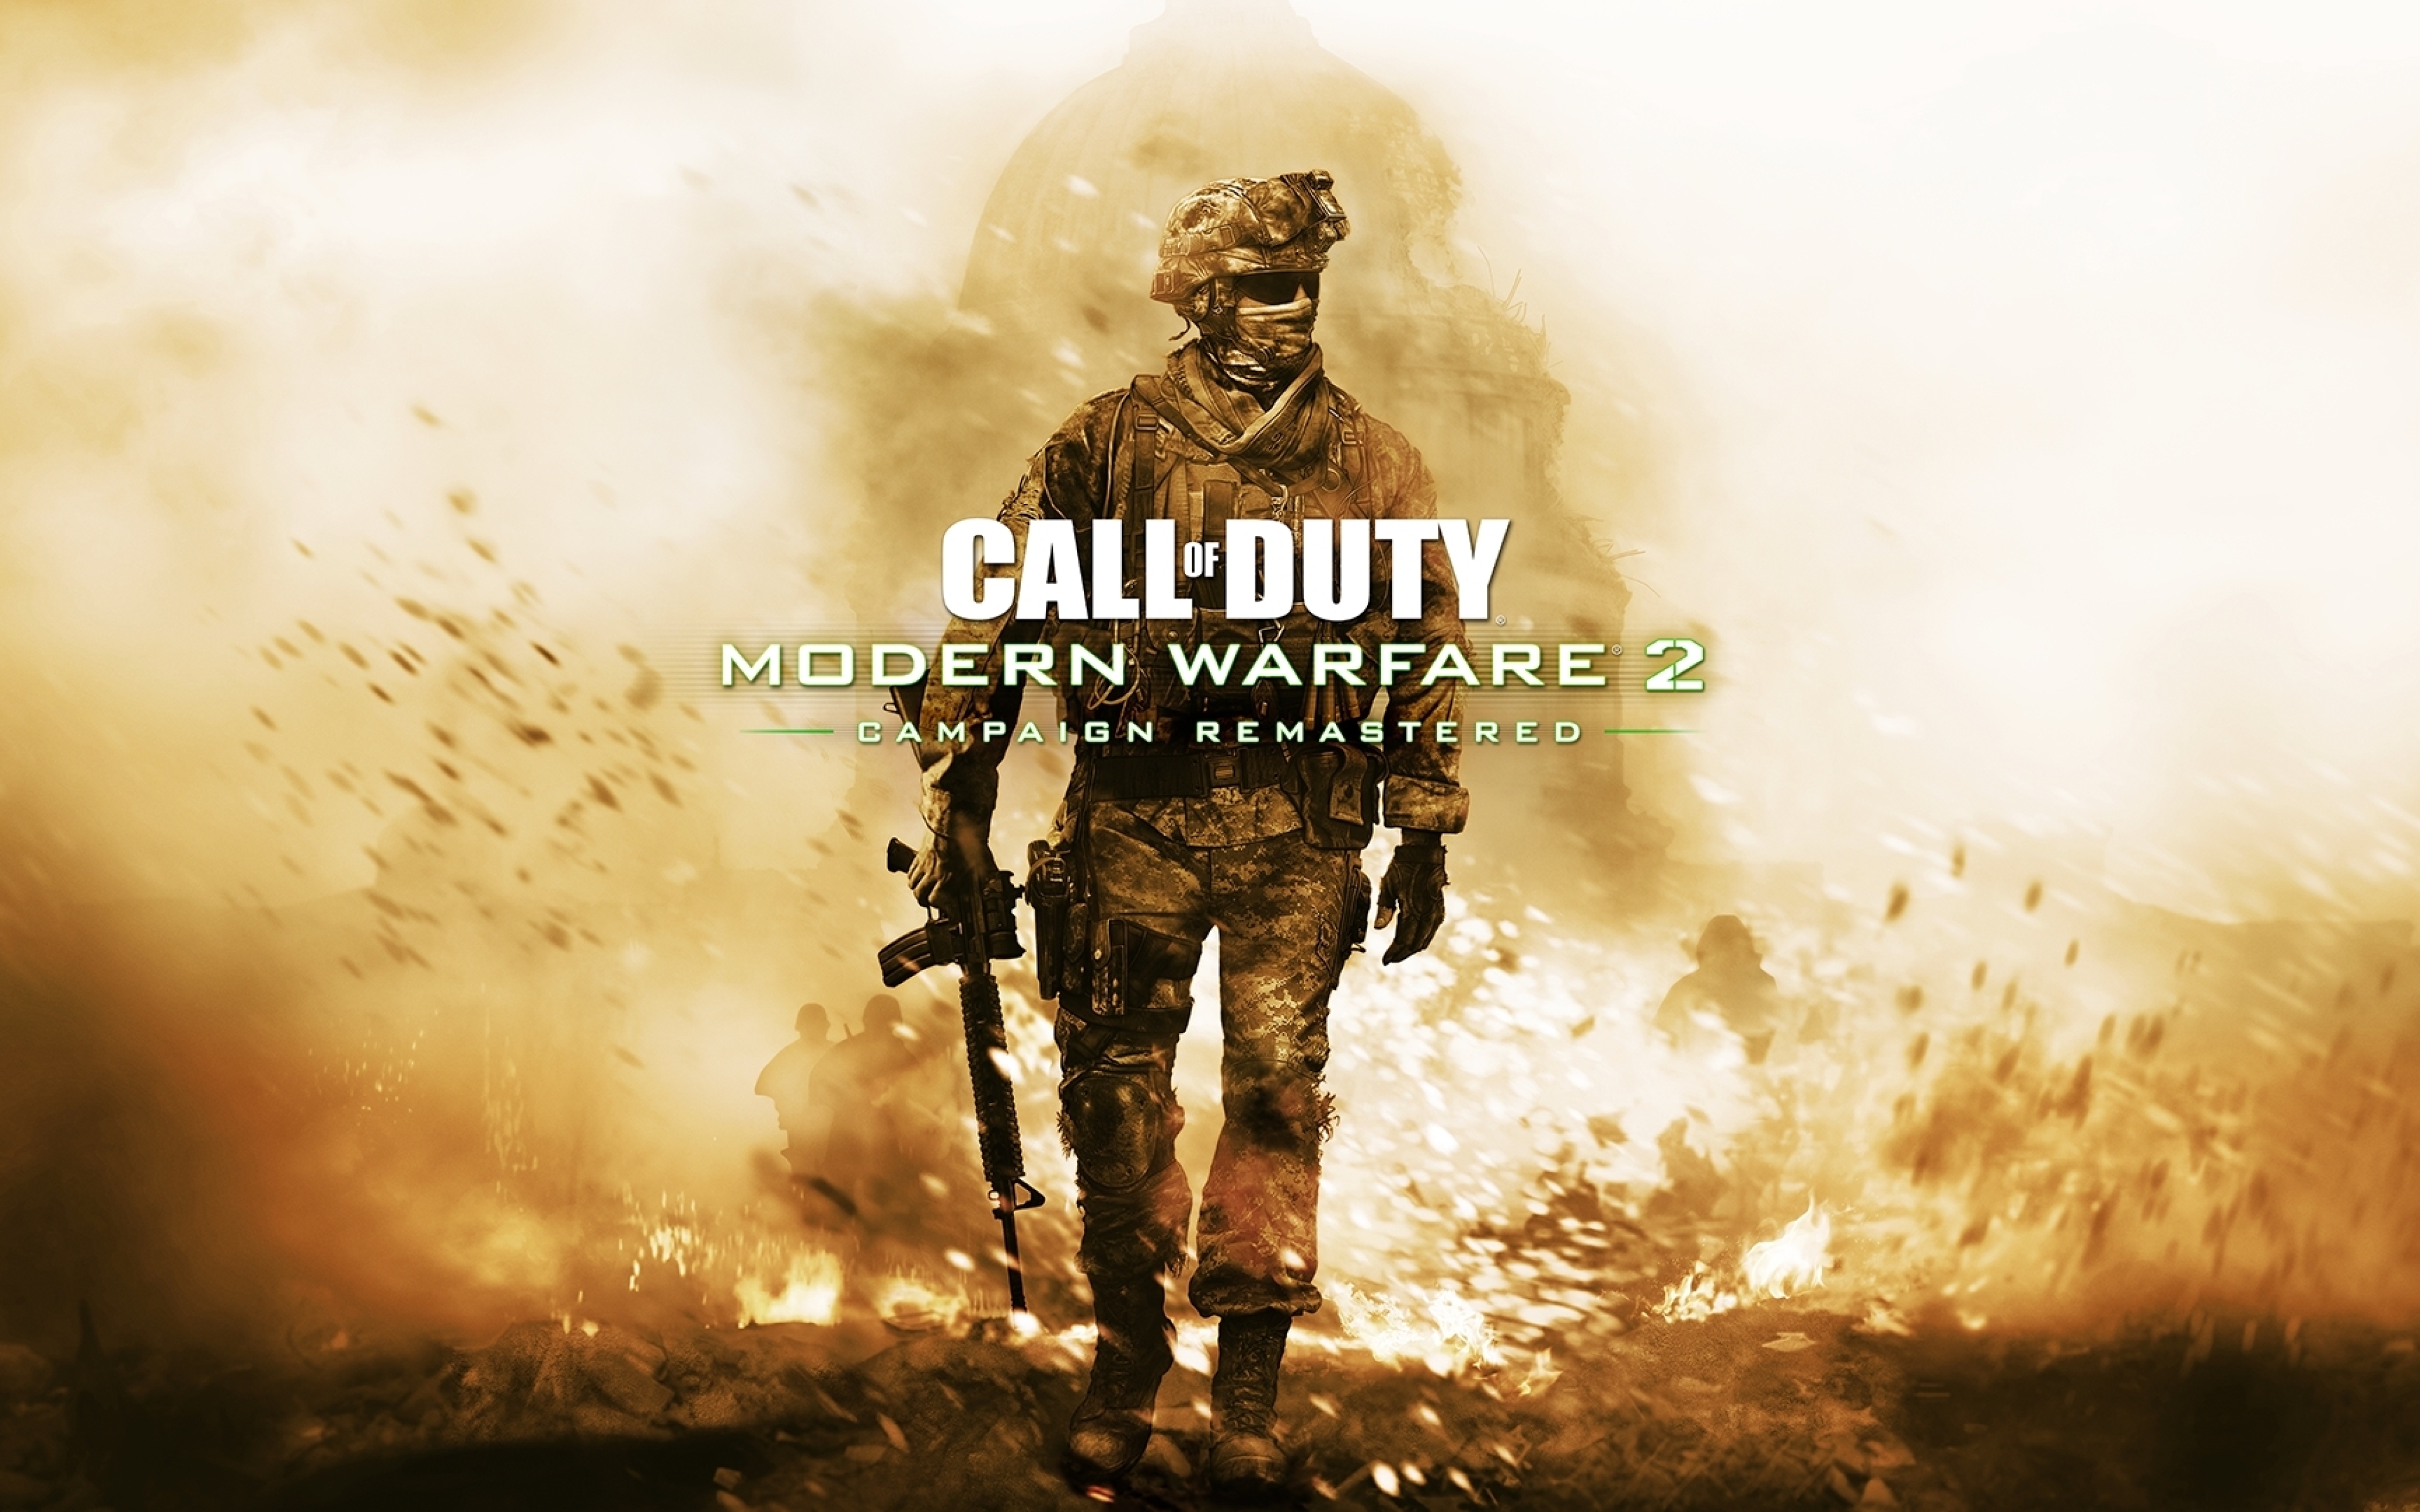 Call of Duty Warzone Mobile filtra imagenes de mapas del nuevo Call of